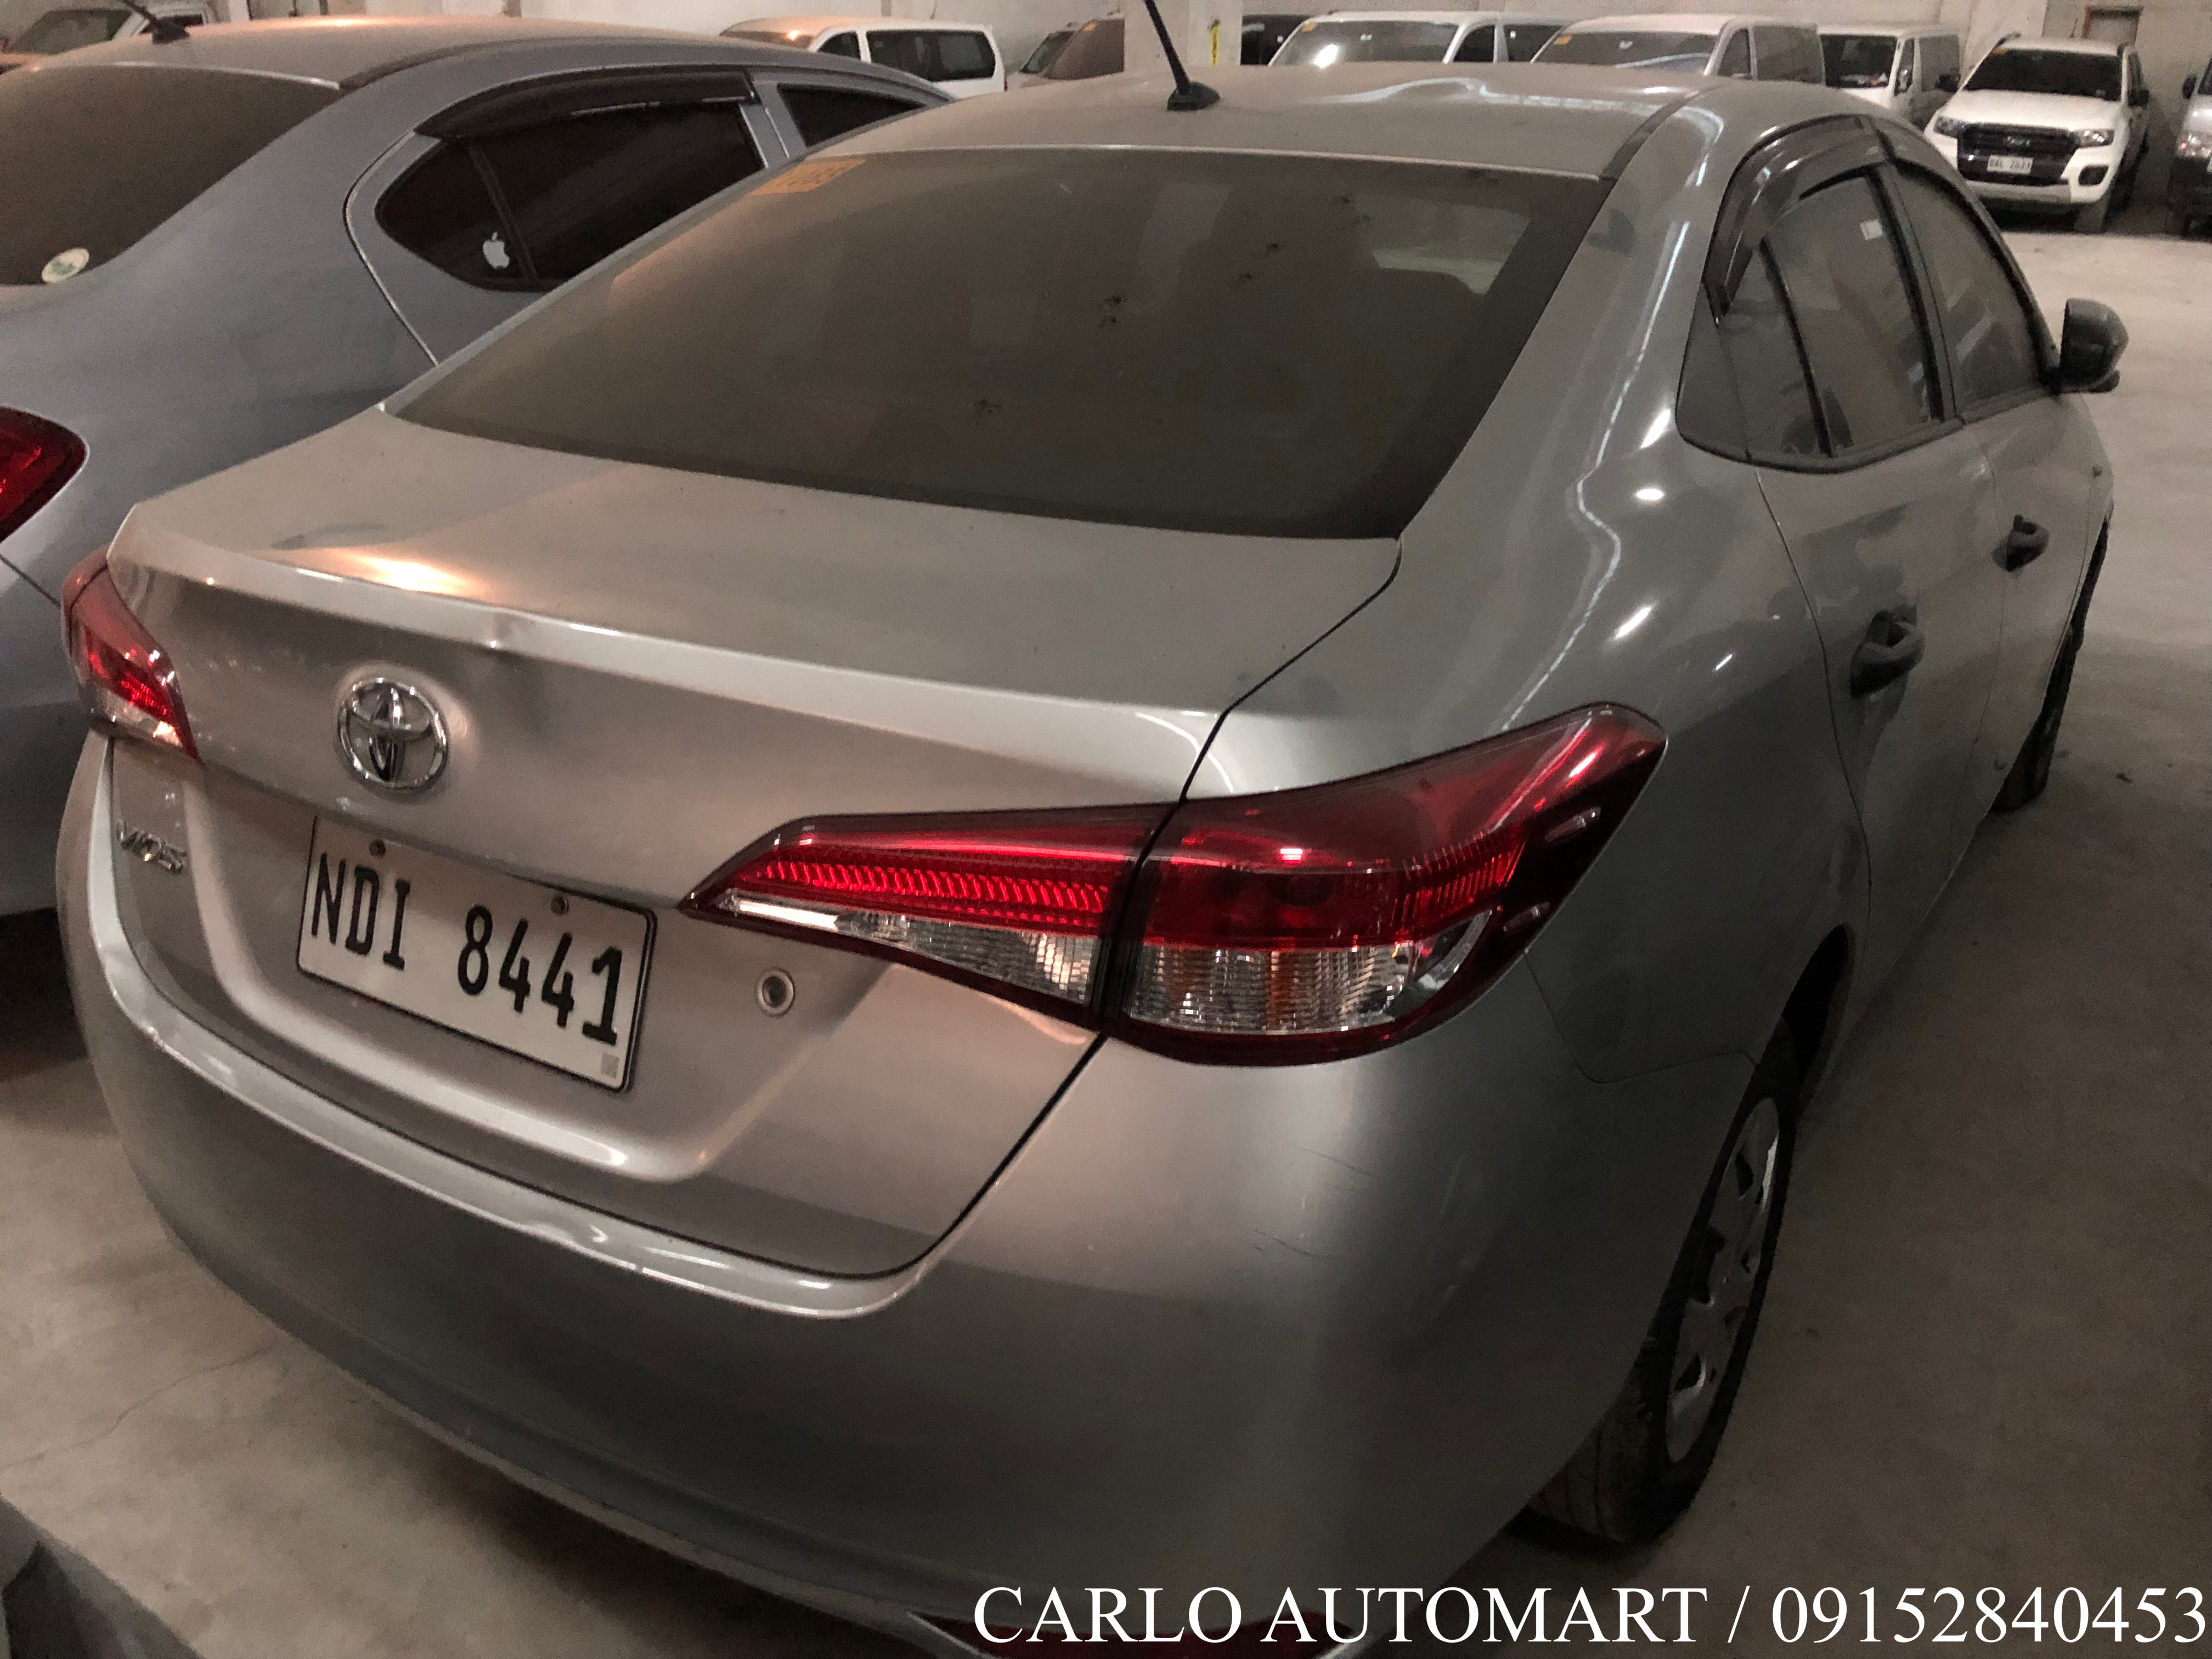 2019 Toyota Vios XE 1.3